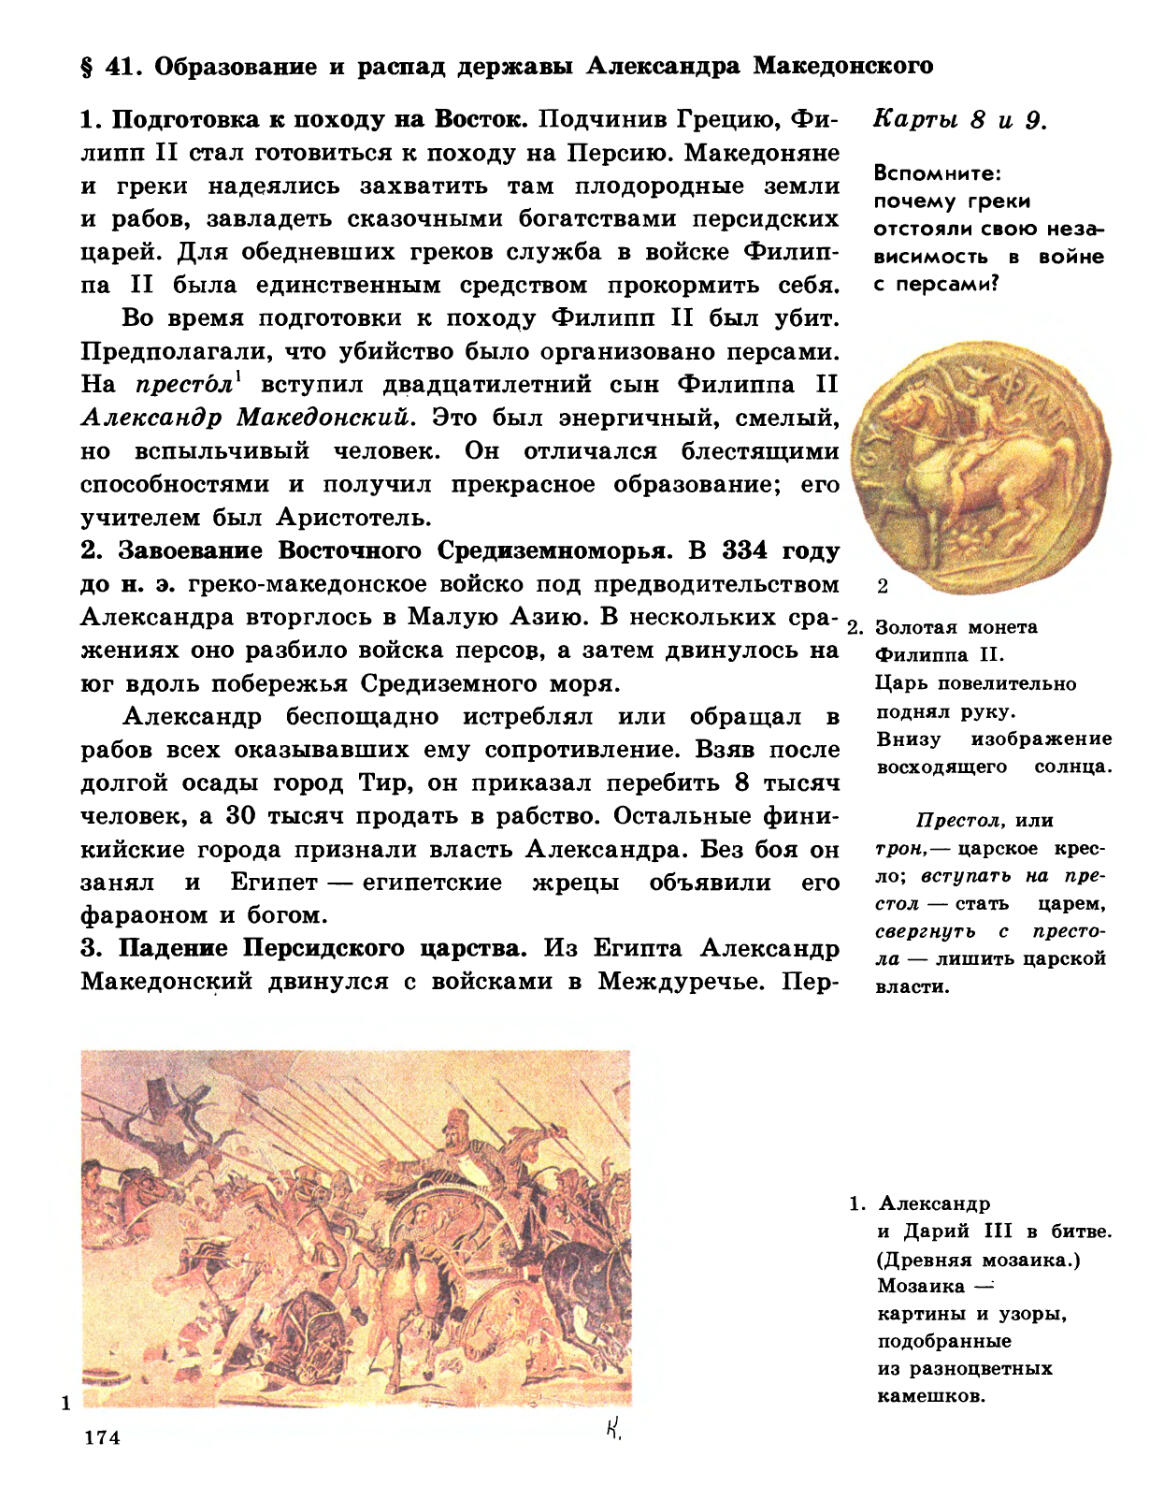 § 41. Образование и распад державы Александра Македонского